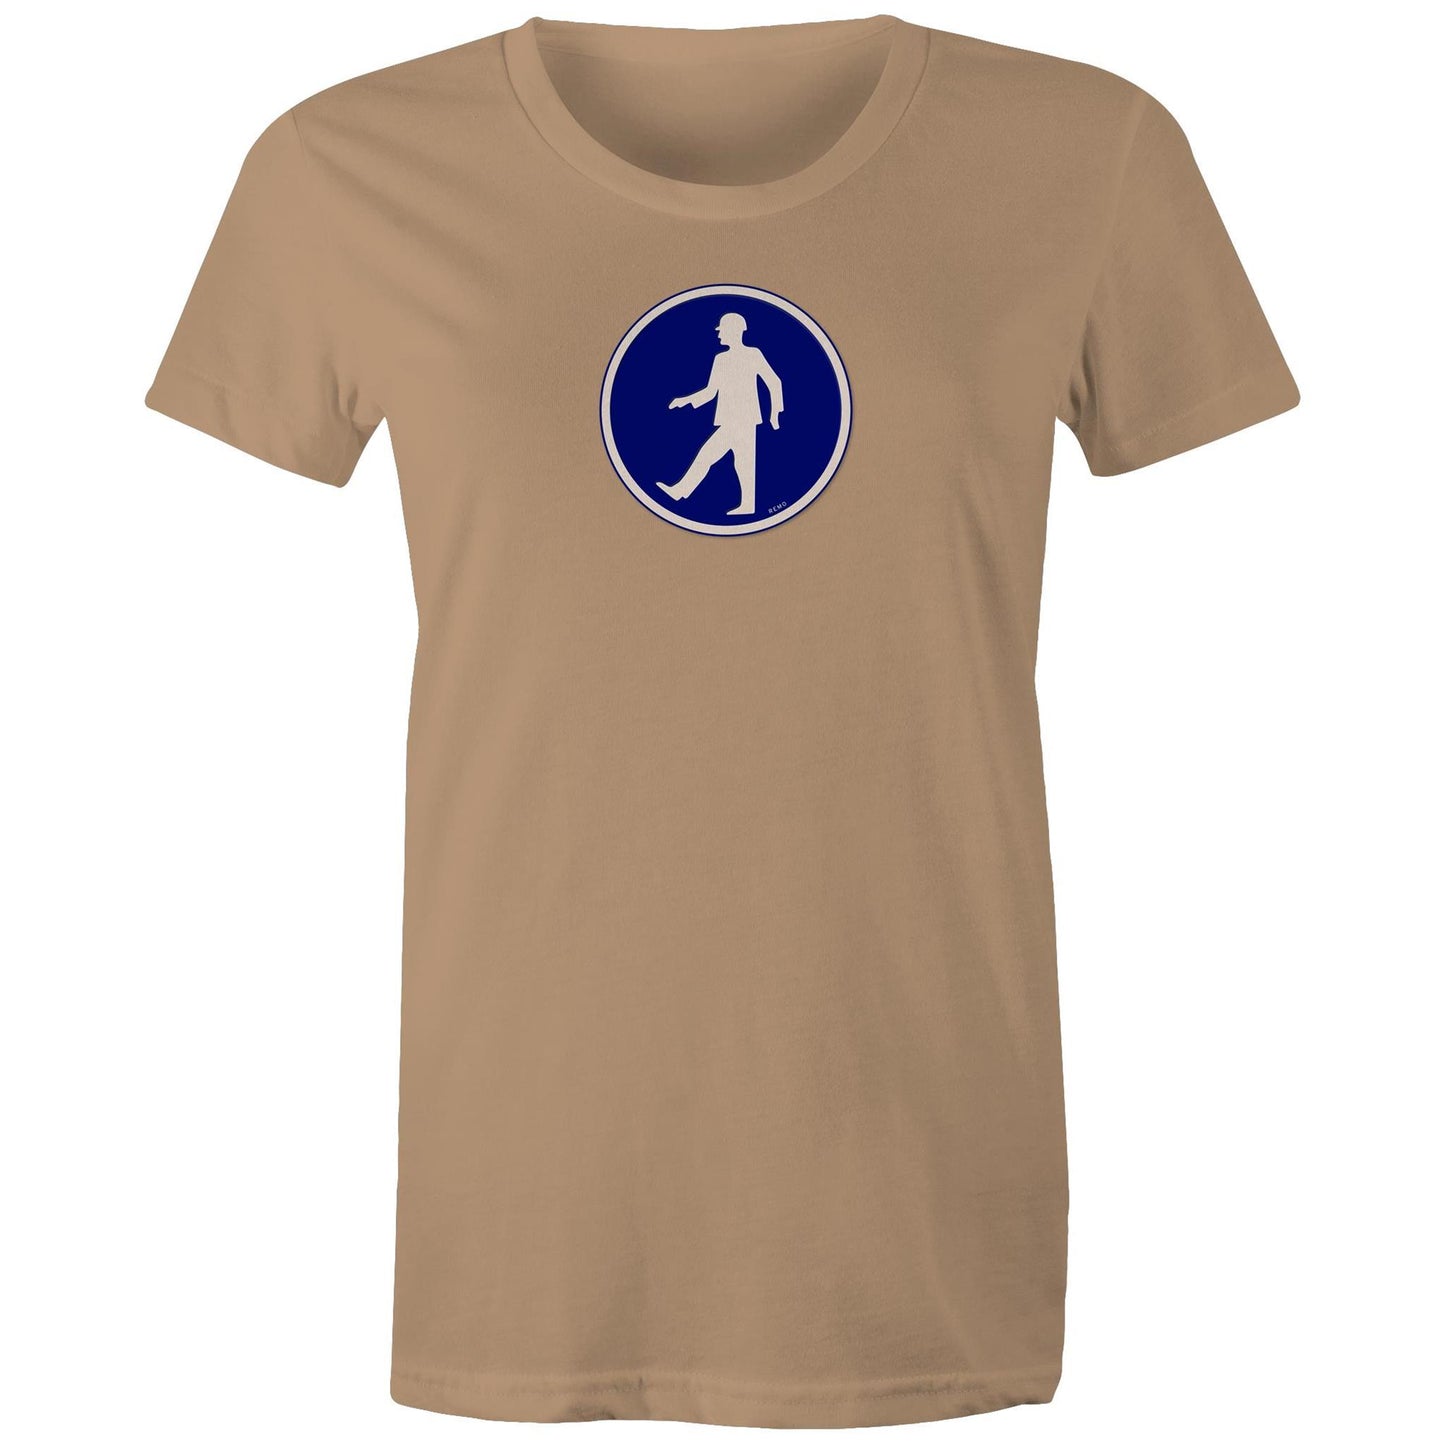 Walking Man T Shirts for Women